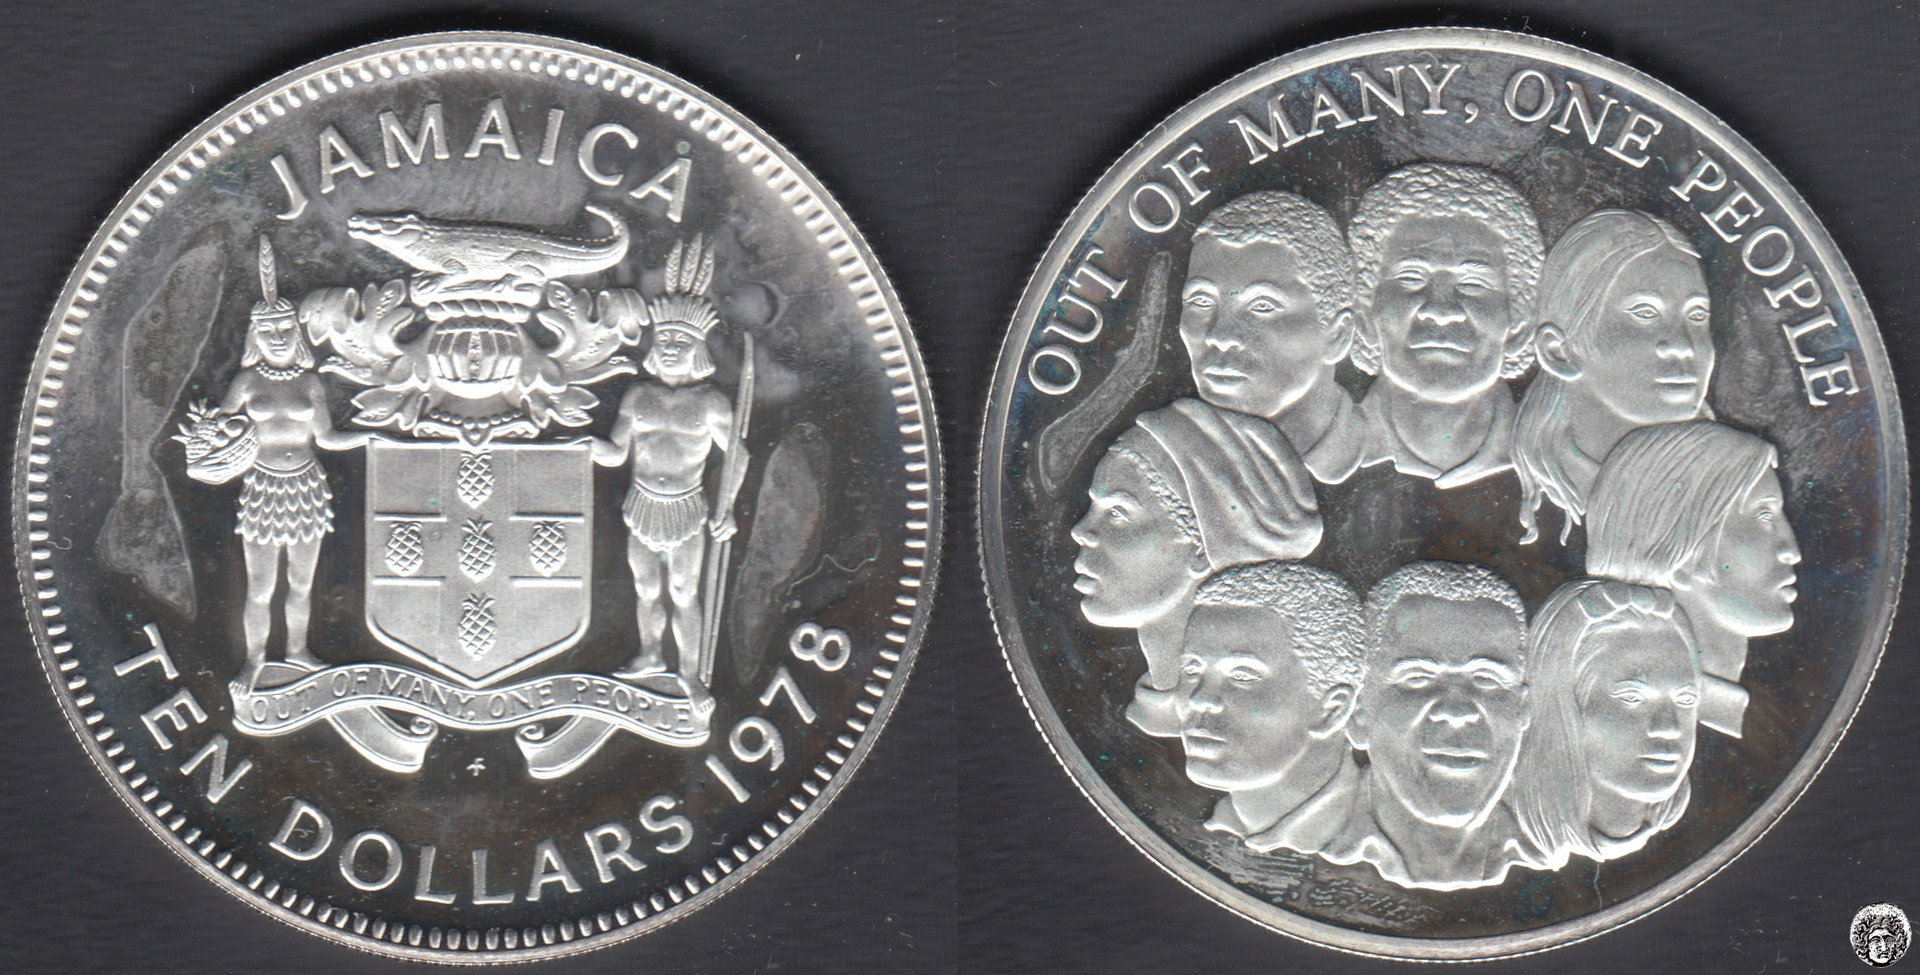 JAMAICA. 10 DOLARES (DOLLARES) DE 1978. PLATA 0.0925. (2)